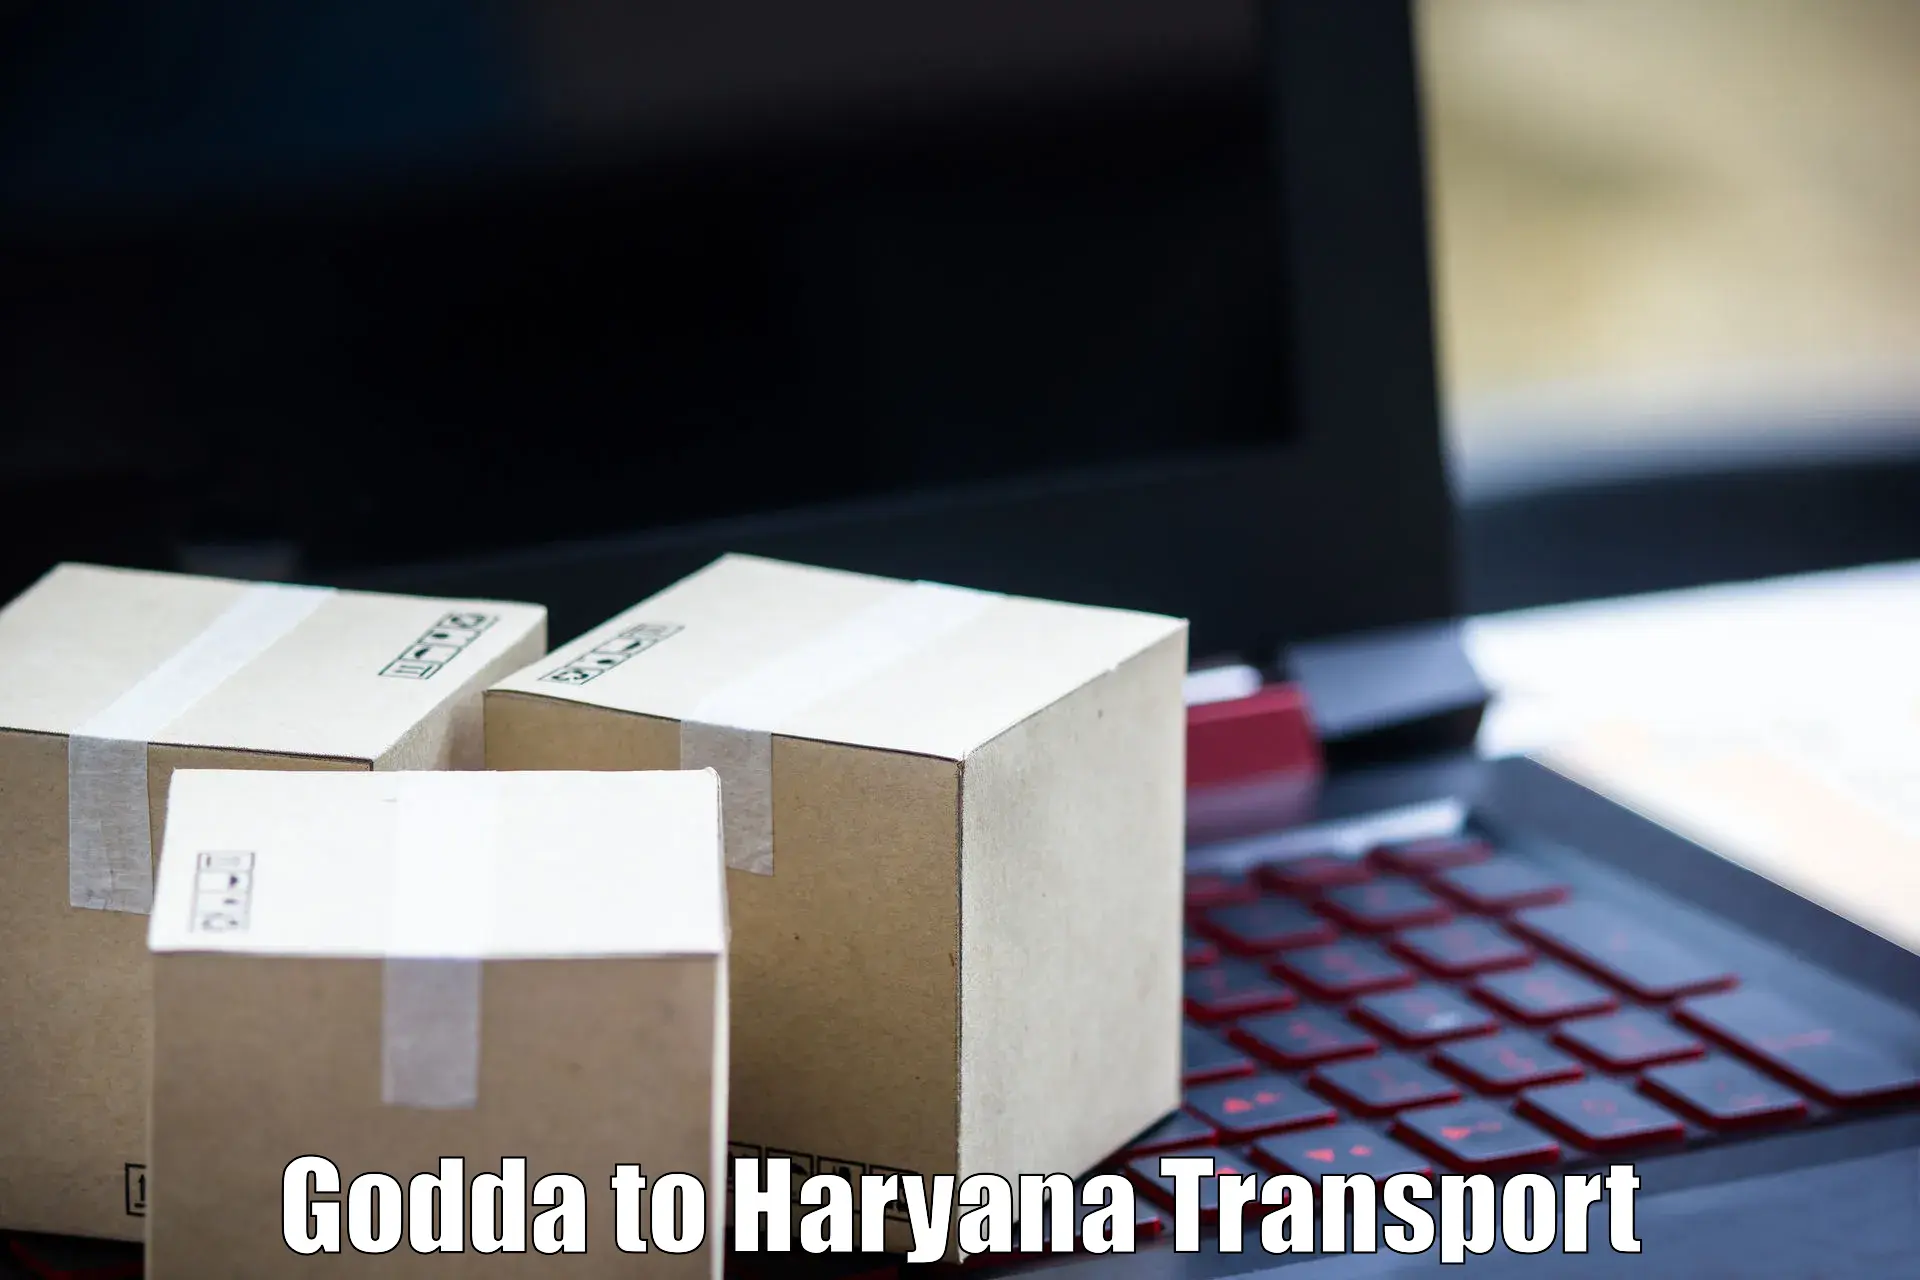 Transport shared services Godda to Chaudhary Charan Singh Haryana Agricultural University Hisar